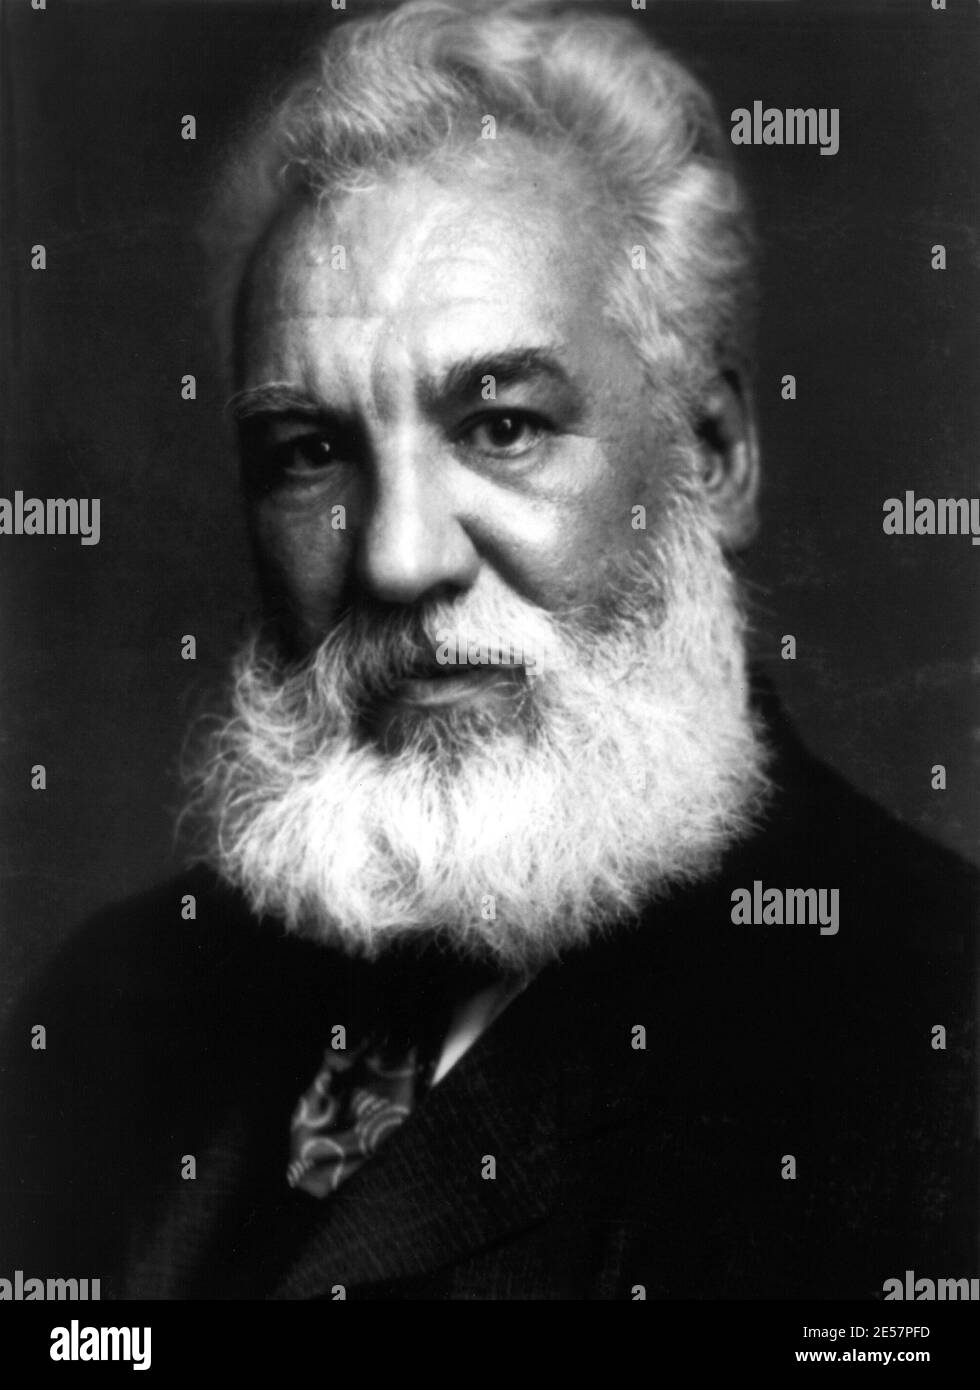 1917 c., EE.UU. : el inventor telefónico estadounidense Alexander Graham BELL ( 1847 - 1922 ) , Ladrón en 1876 de italiano Antonio MEUCCI 1849 invención - TECNOLOGO - FISIOLOGO - INVENTORE - TELEFONO - TELEFONIA - TELÉFONO - retrato - ritratto - cravatta - corbata - barba de pelo blanco - capelli bianchi - barba bianca - hombre mayor antiguo - uomo vecchio anziano ---- Archivio GBB Foto de stock